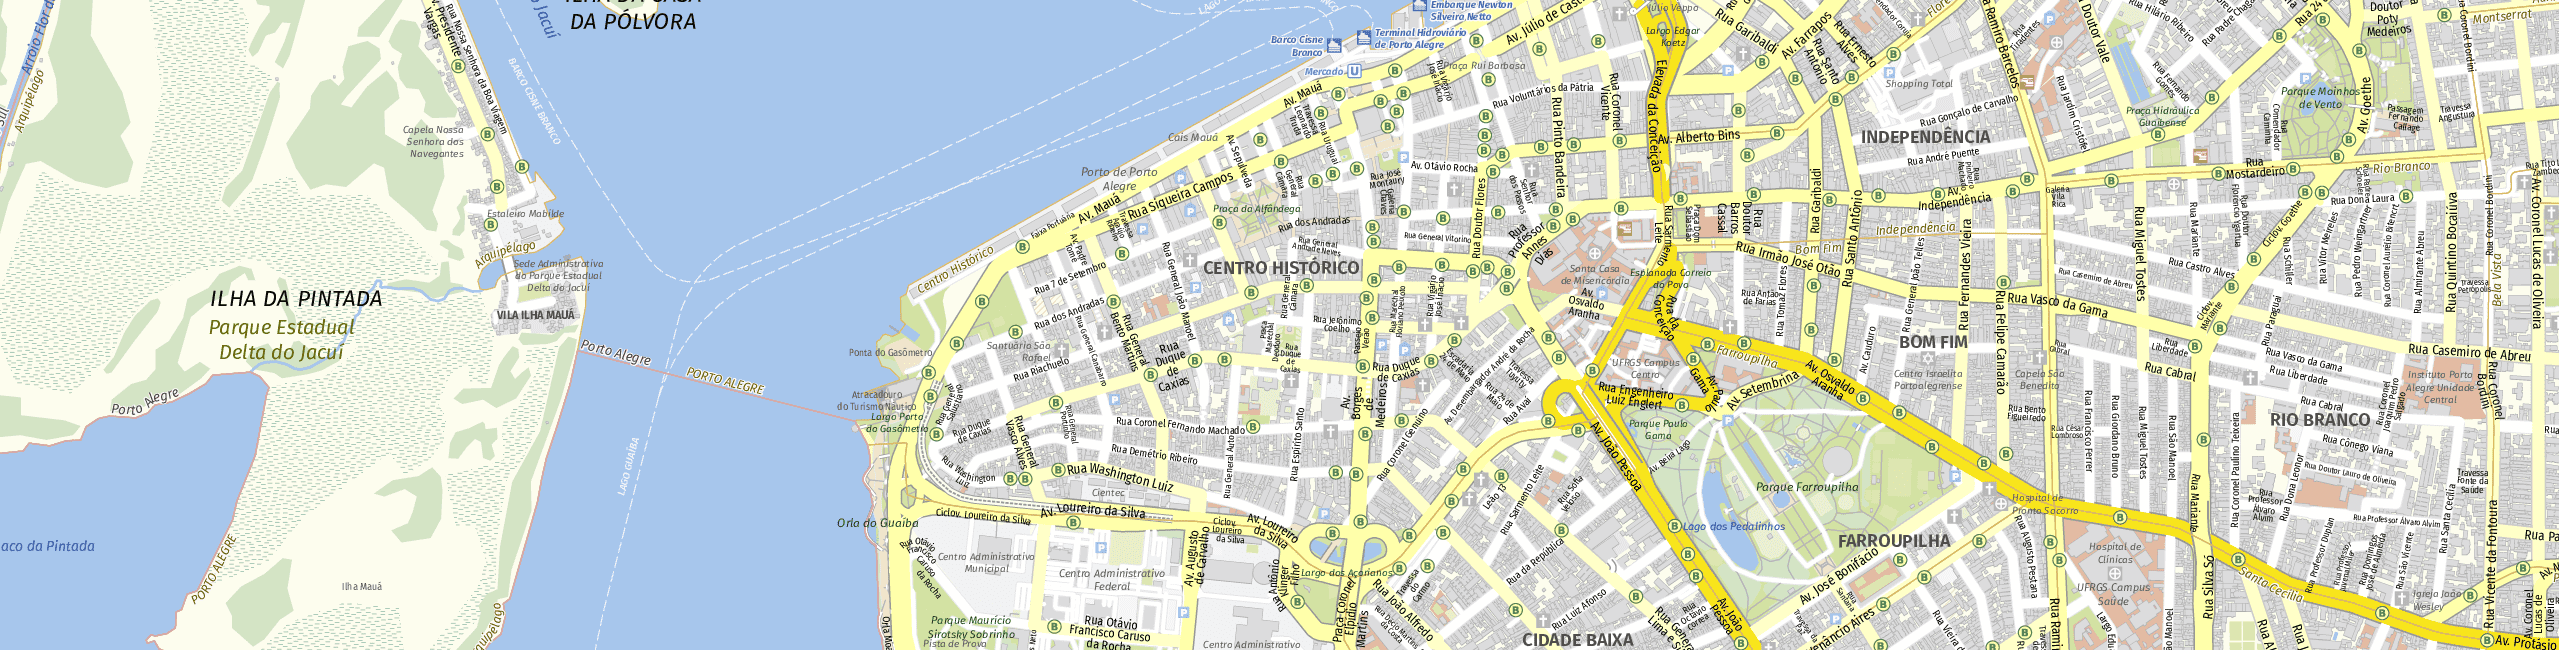 Stadtplan Porto Alegre zum Downloaden.